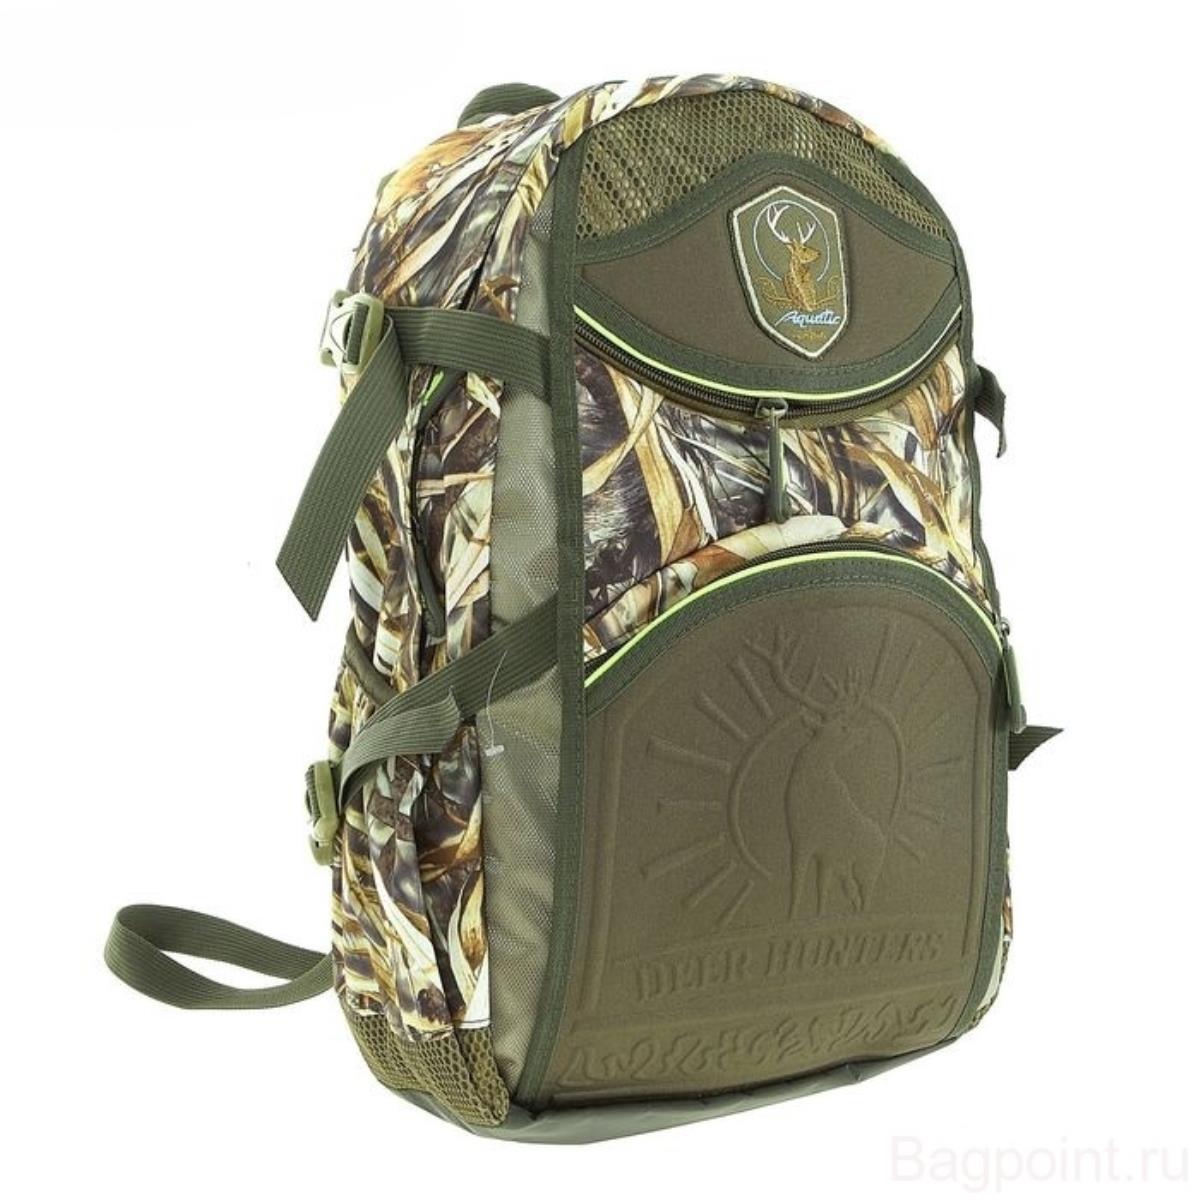 Рюкзак для охоты 32л (РО-32) Aquatic рюкзак на молнии 3 наружных кармана зелёный